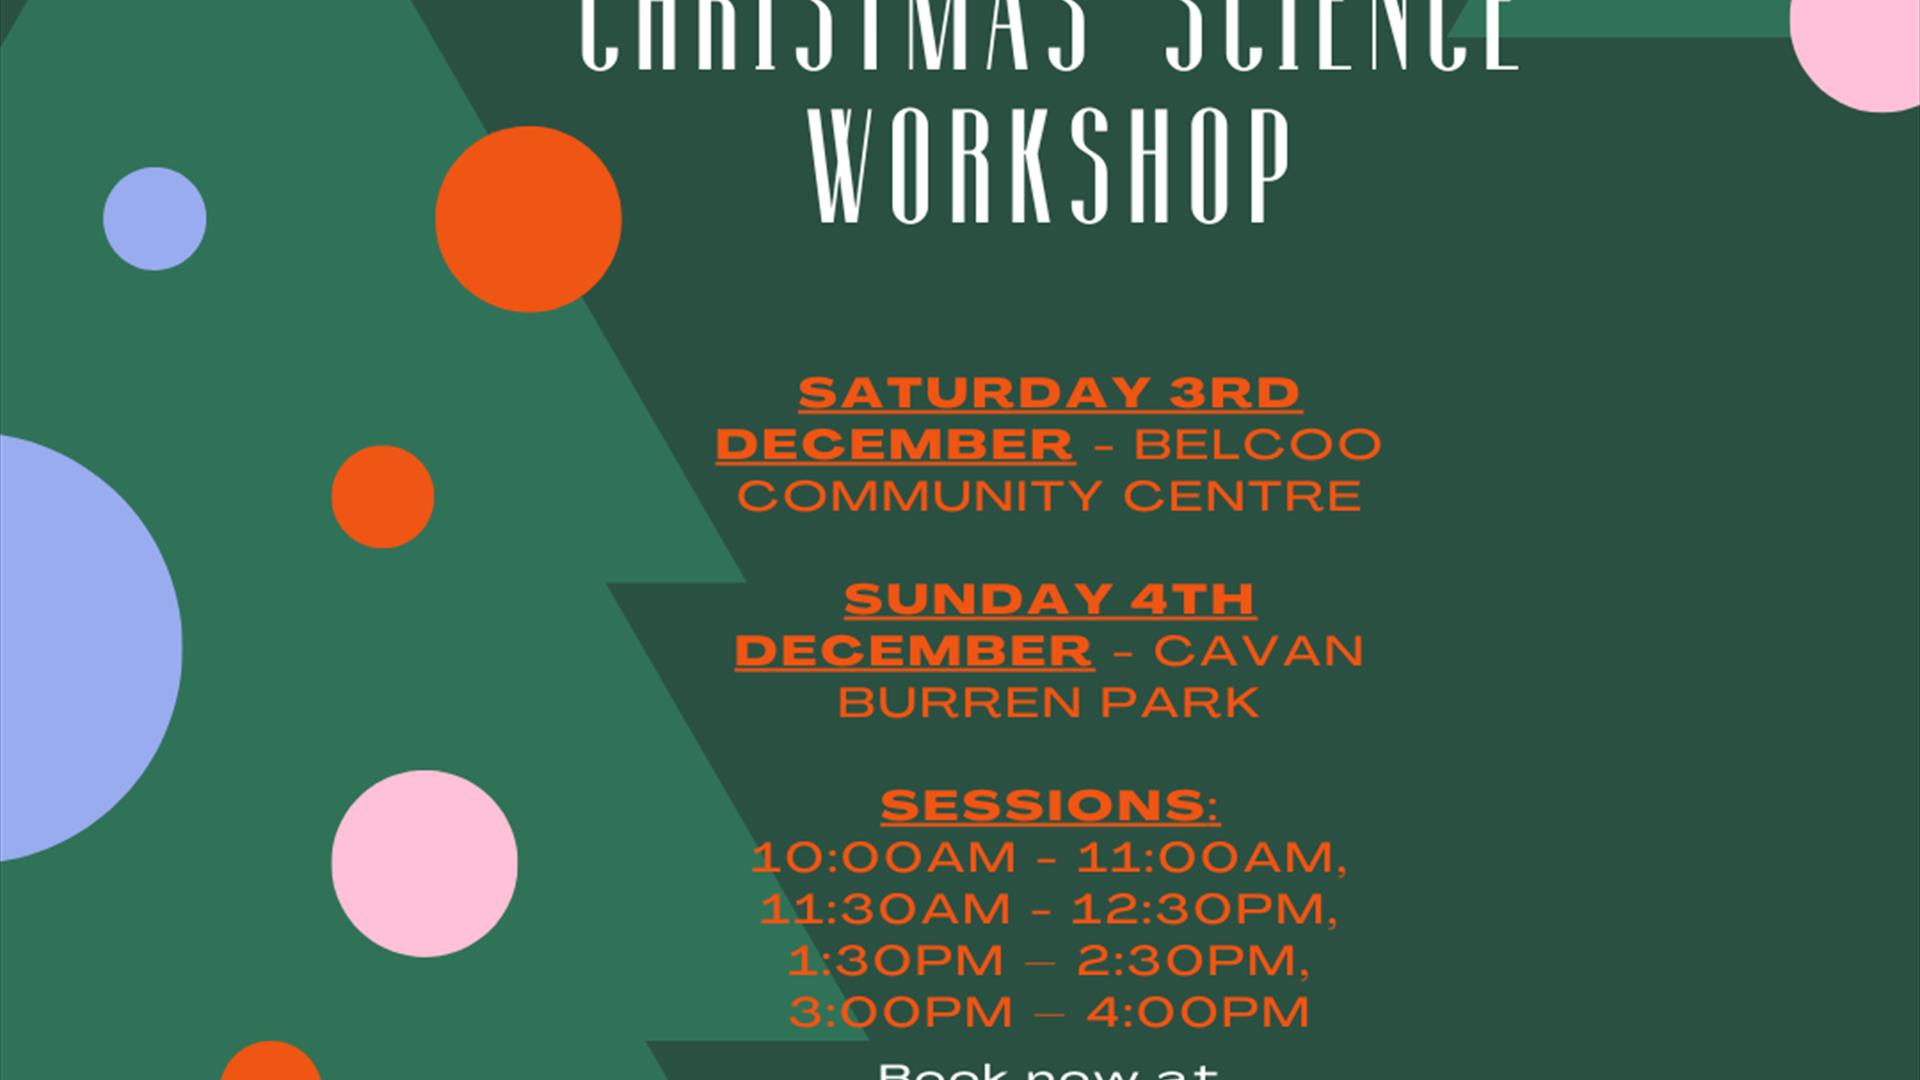 Christmas Science Workshop.